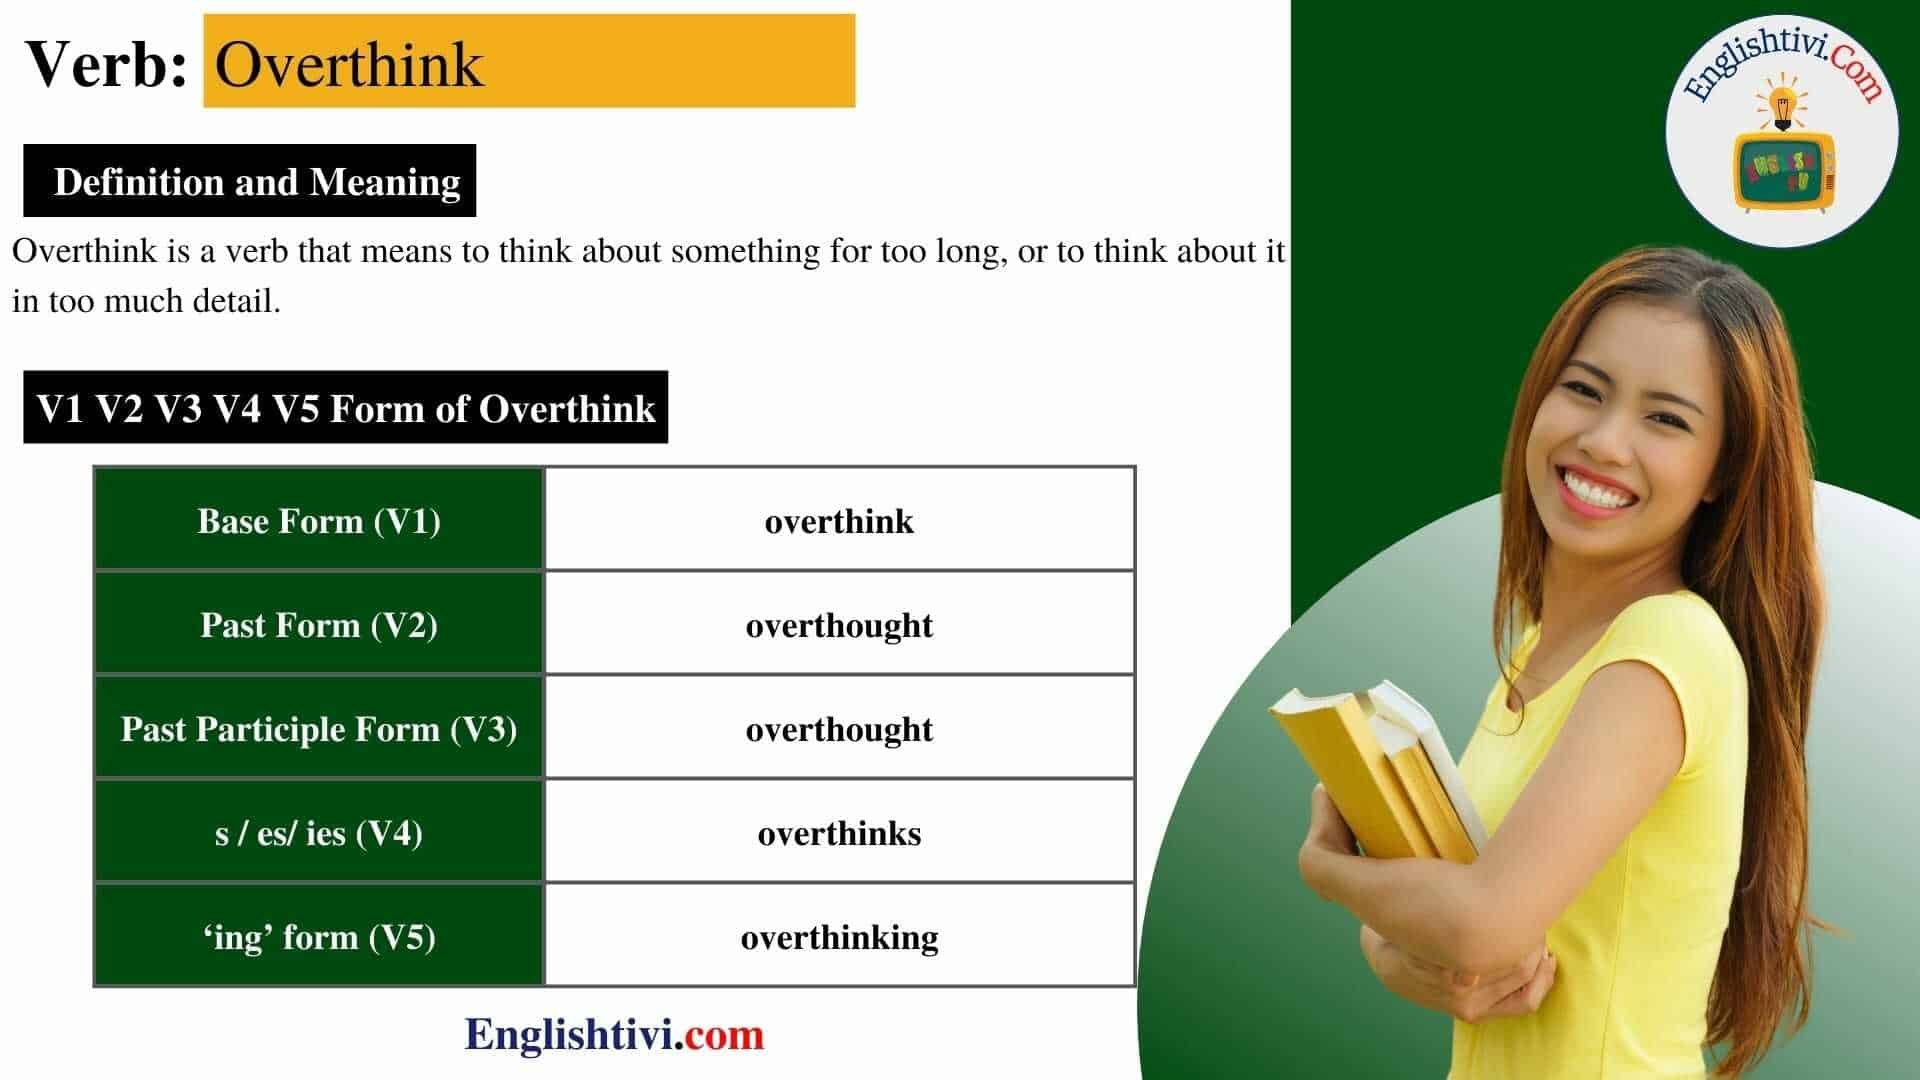 overthink V1 V2 V3 V4 V5 Base Form, Past Simple, Past Participle Form of overthink